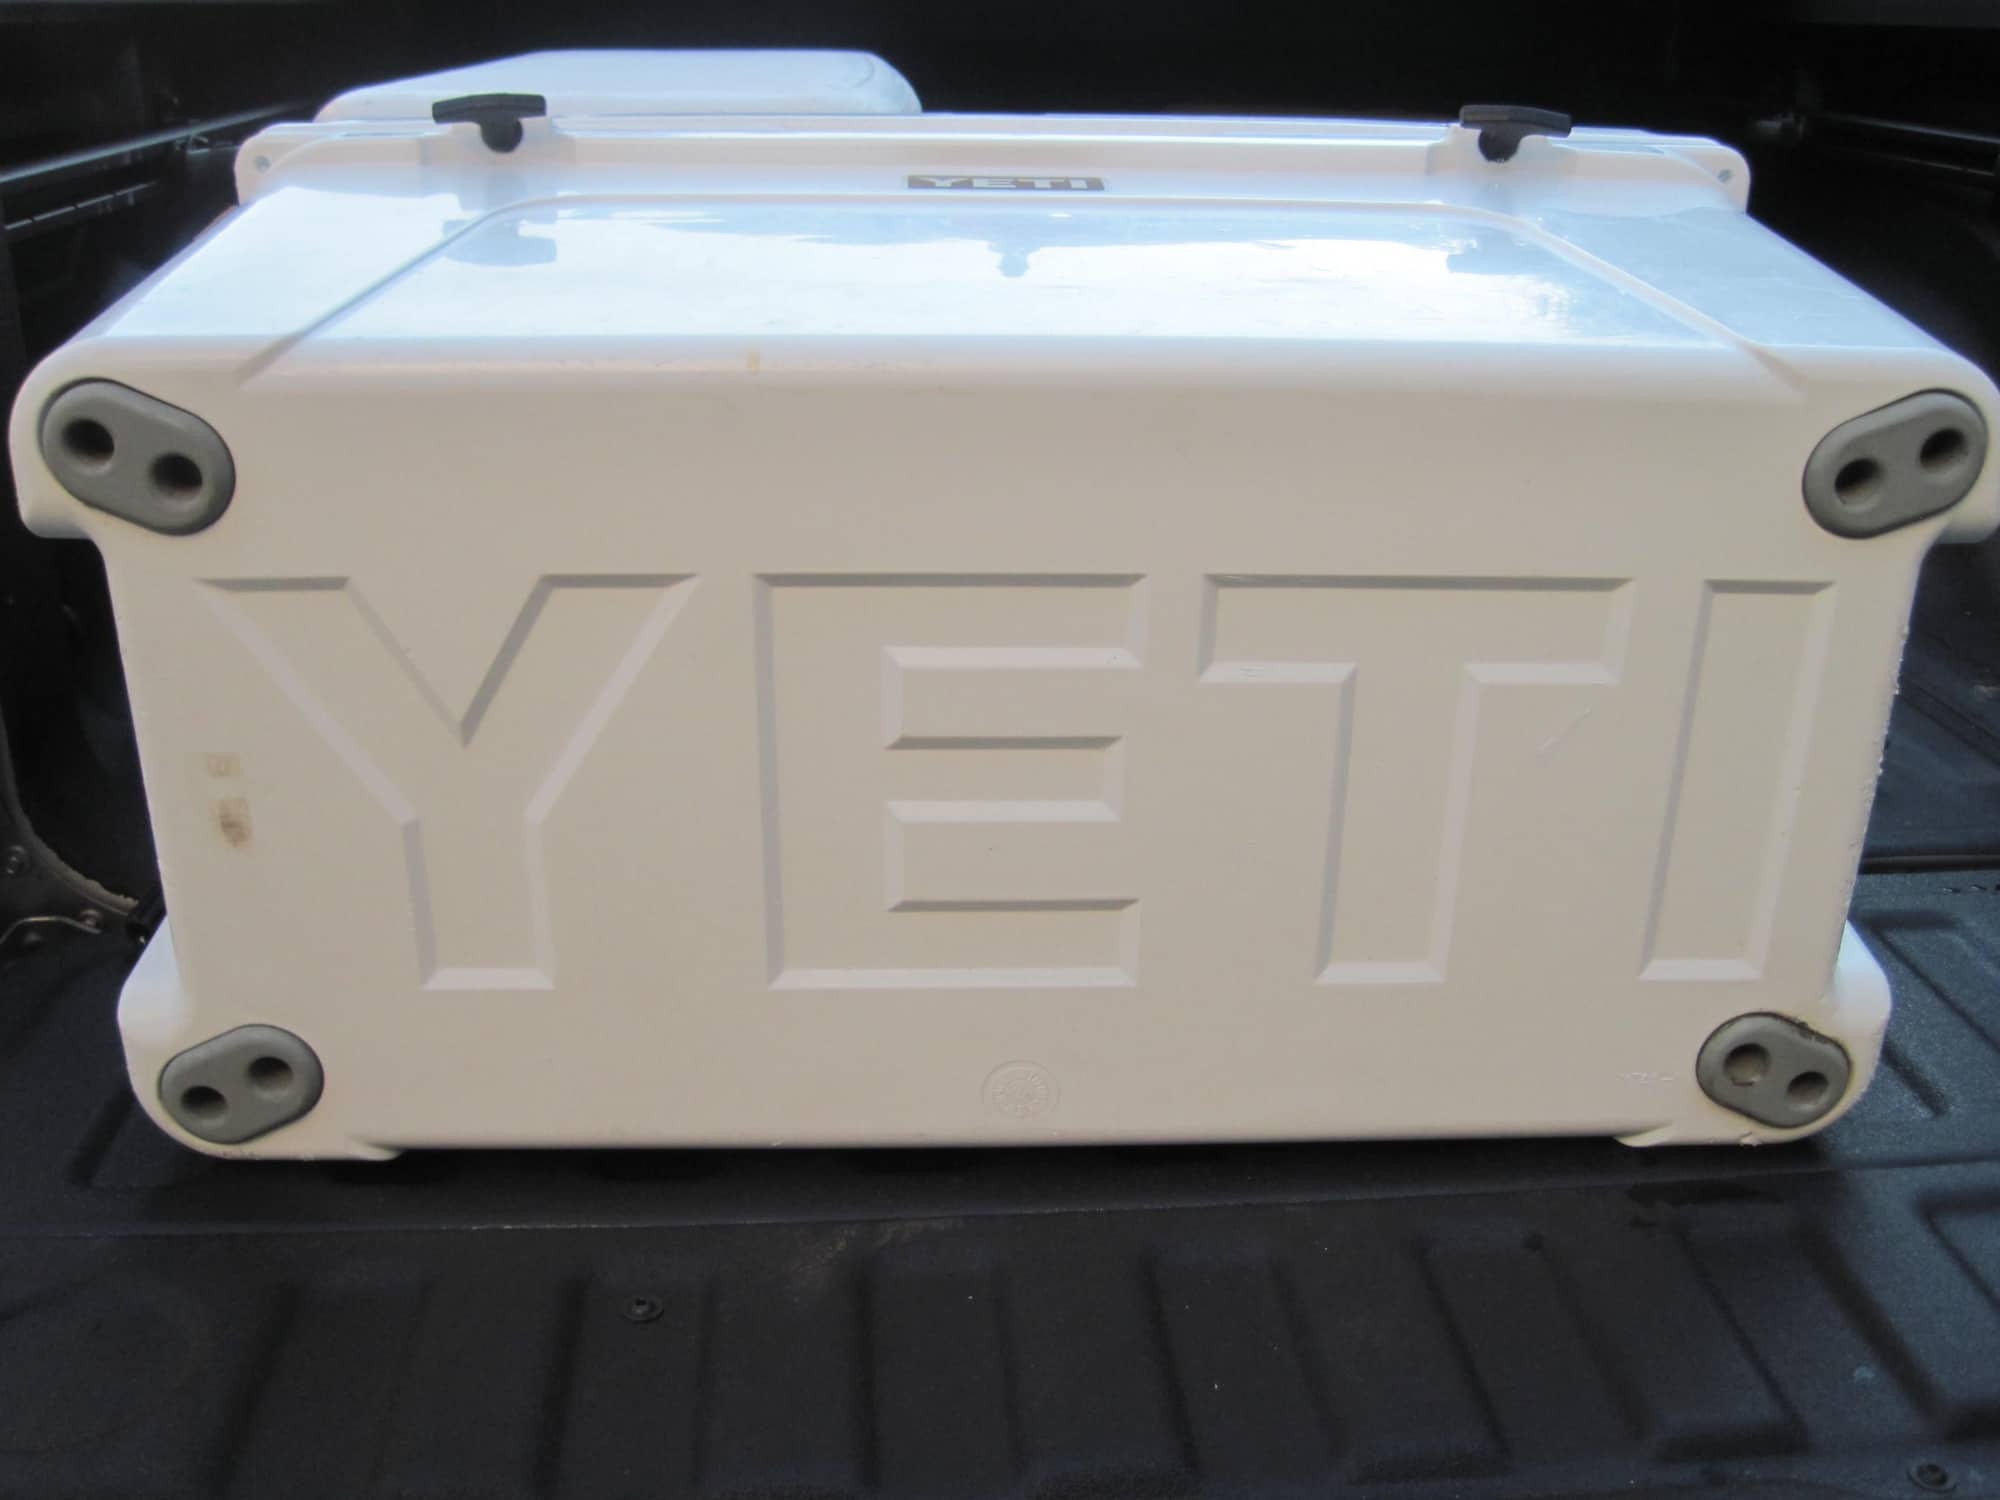 Yeti Tundra 75-Quart Cooler - White